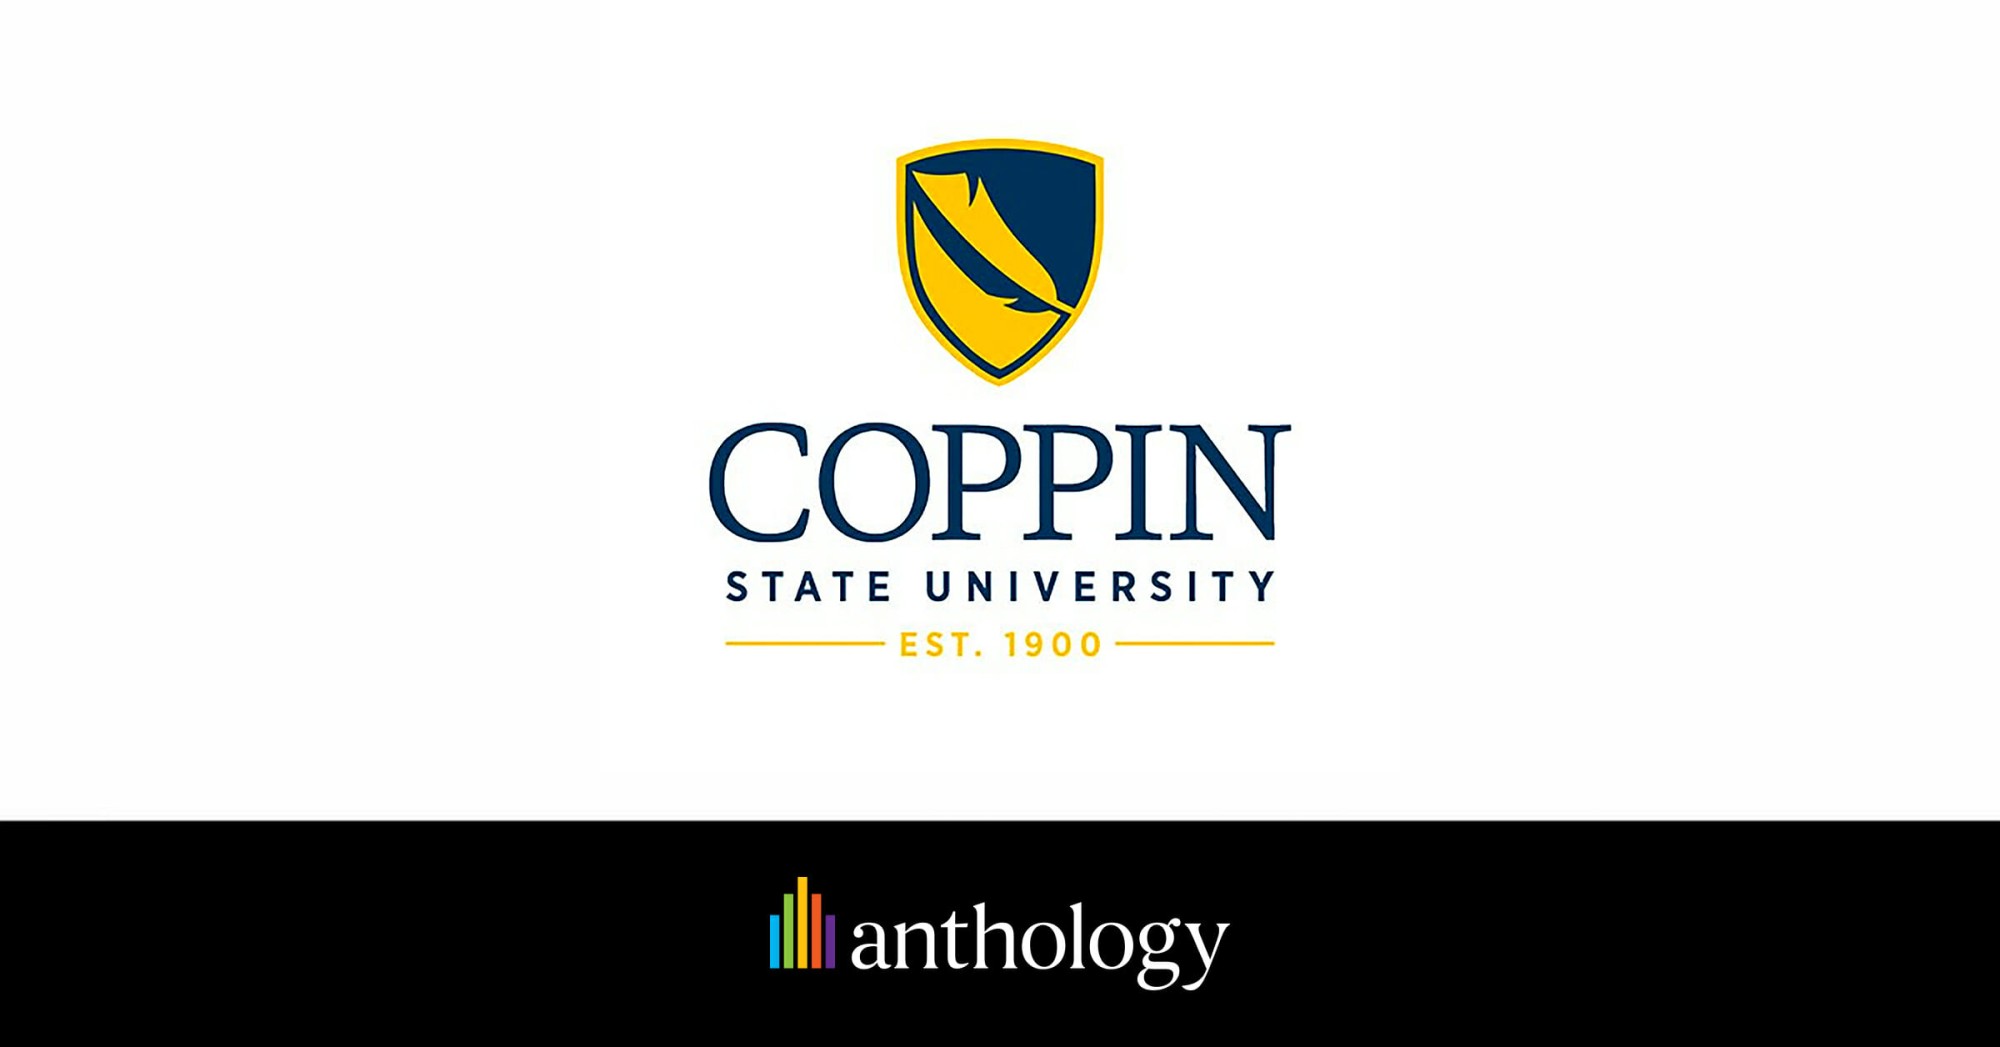 Coppin State University logo lockup with the Anthology logo